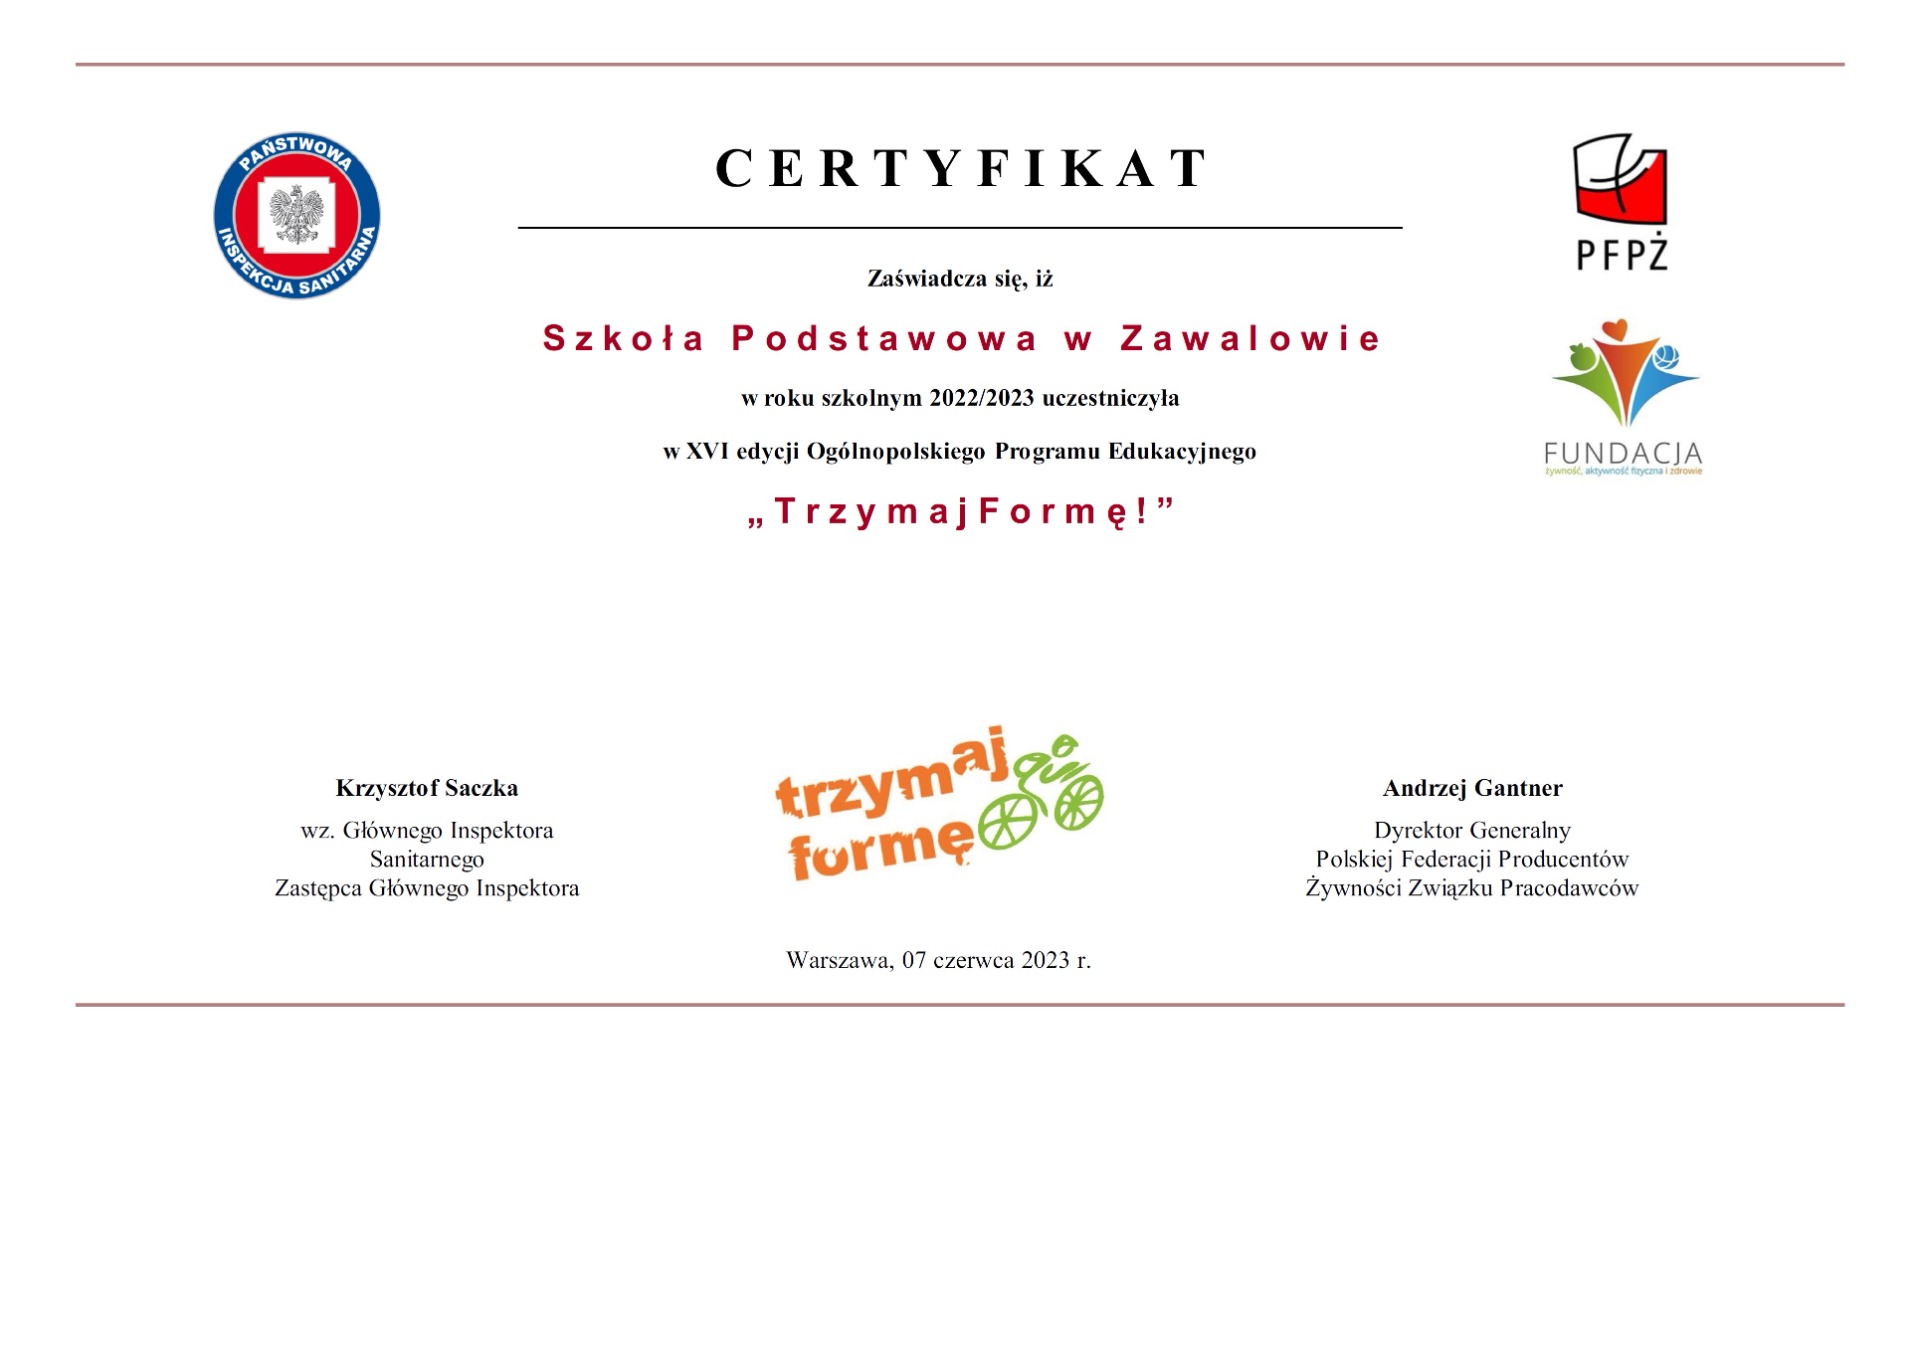 XVI edycja Ogólnopolskiego Programu Edukacyjnego "Trzymaj Formę!" - Certyfikat - Obrazek 1